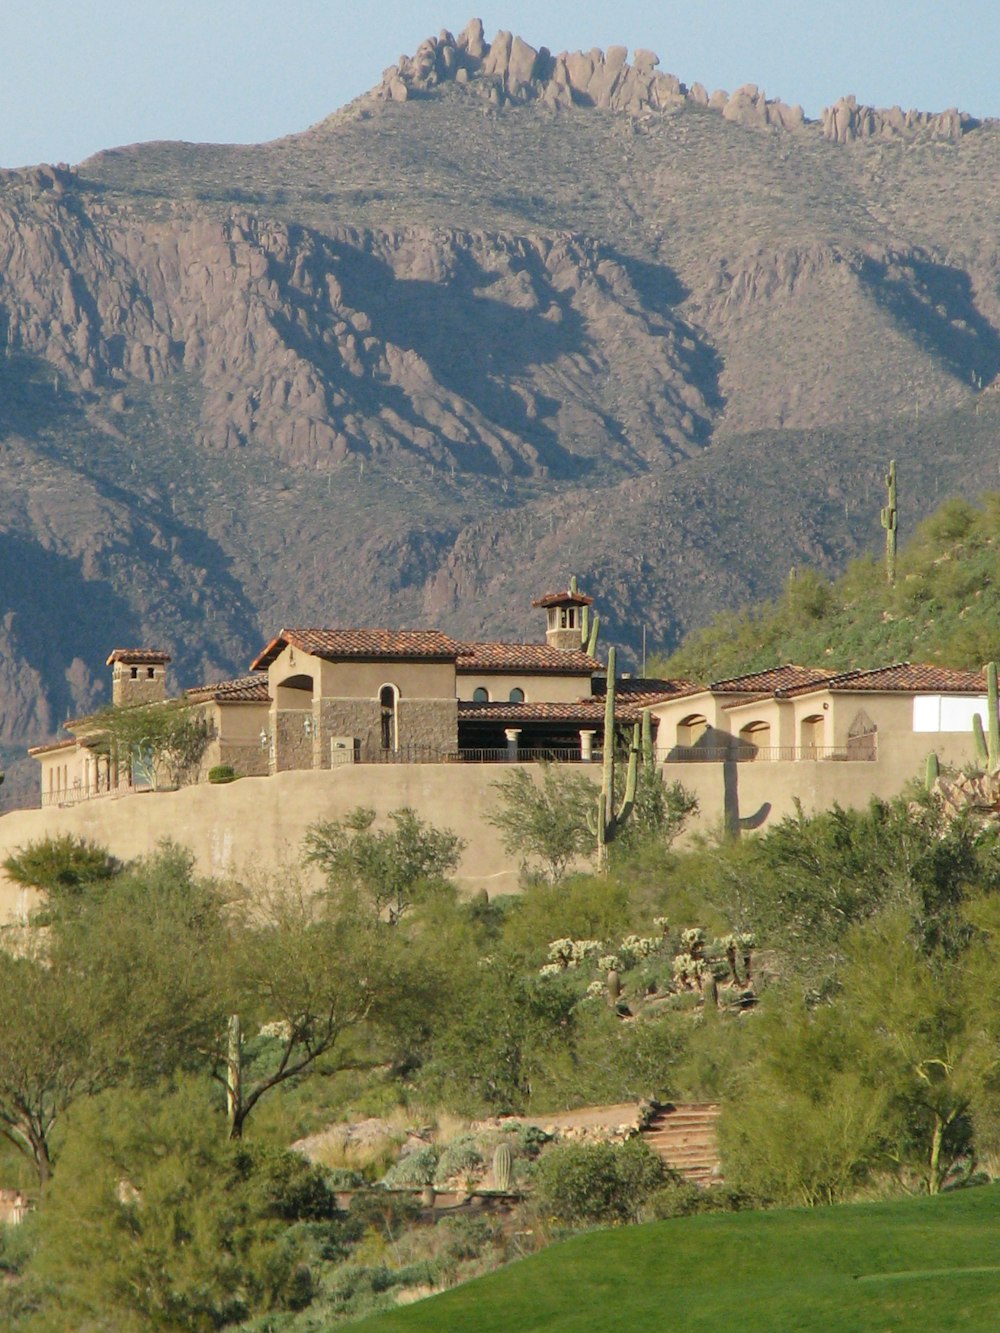 Casa de hormigón cerca de la montaña